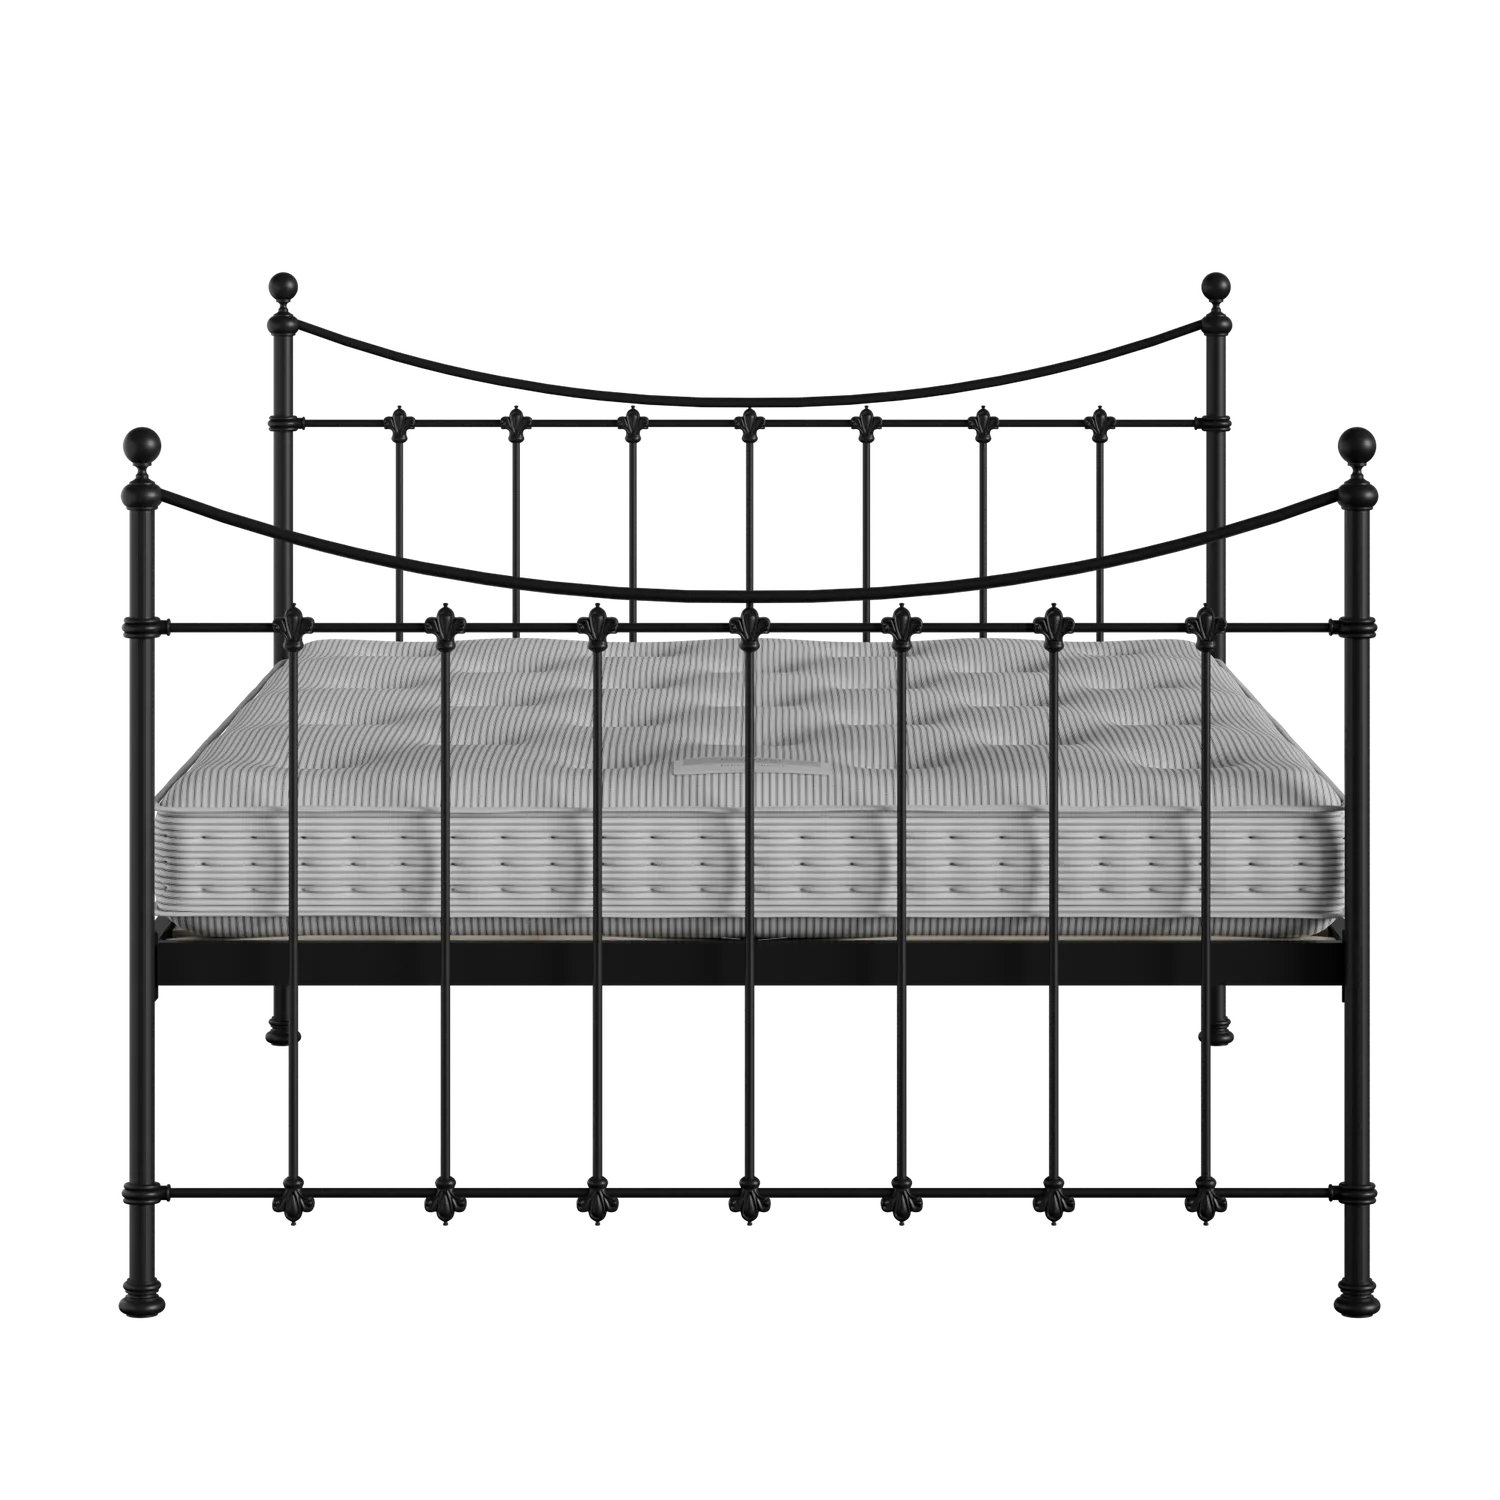 Chatsworth ijzeren bed in zwart met matras